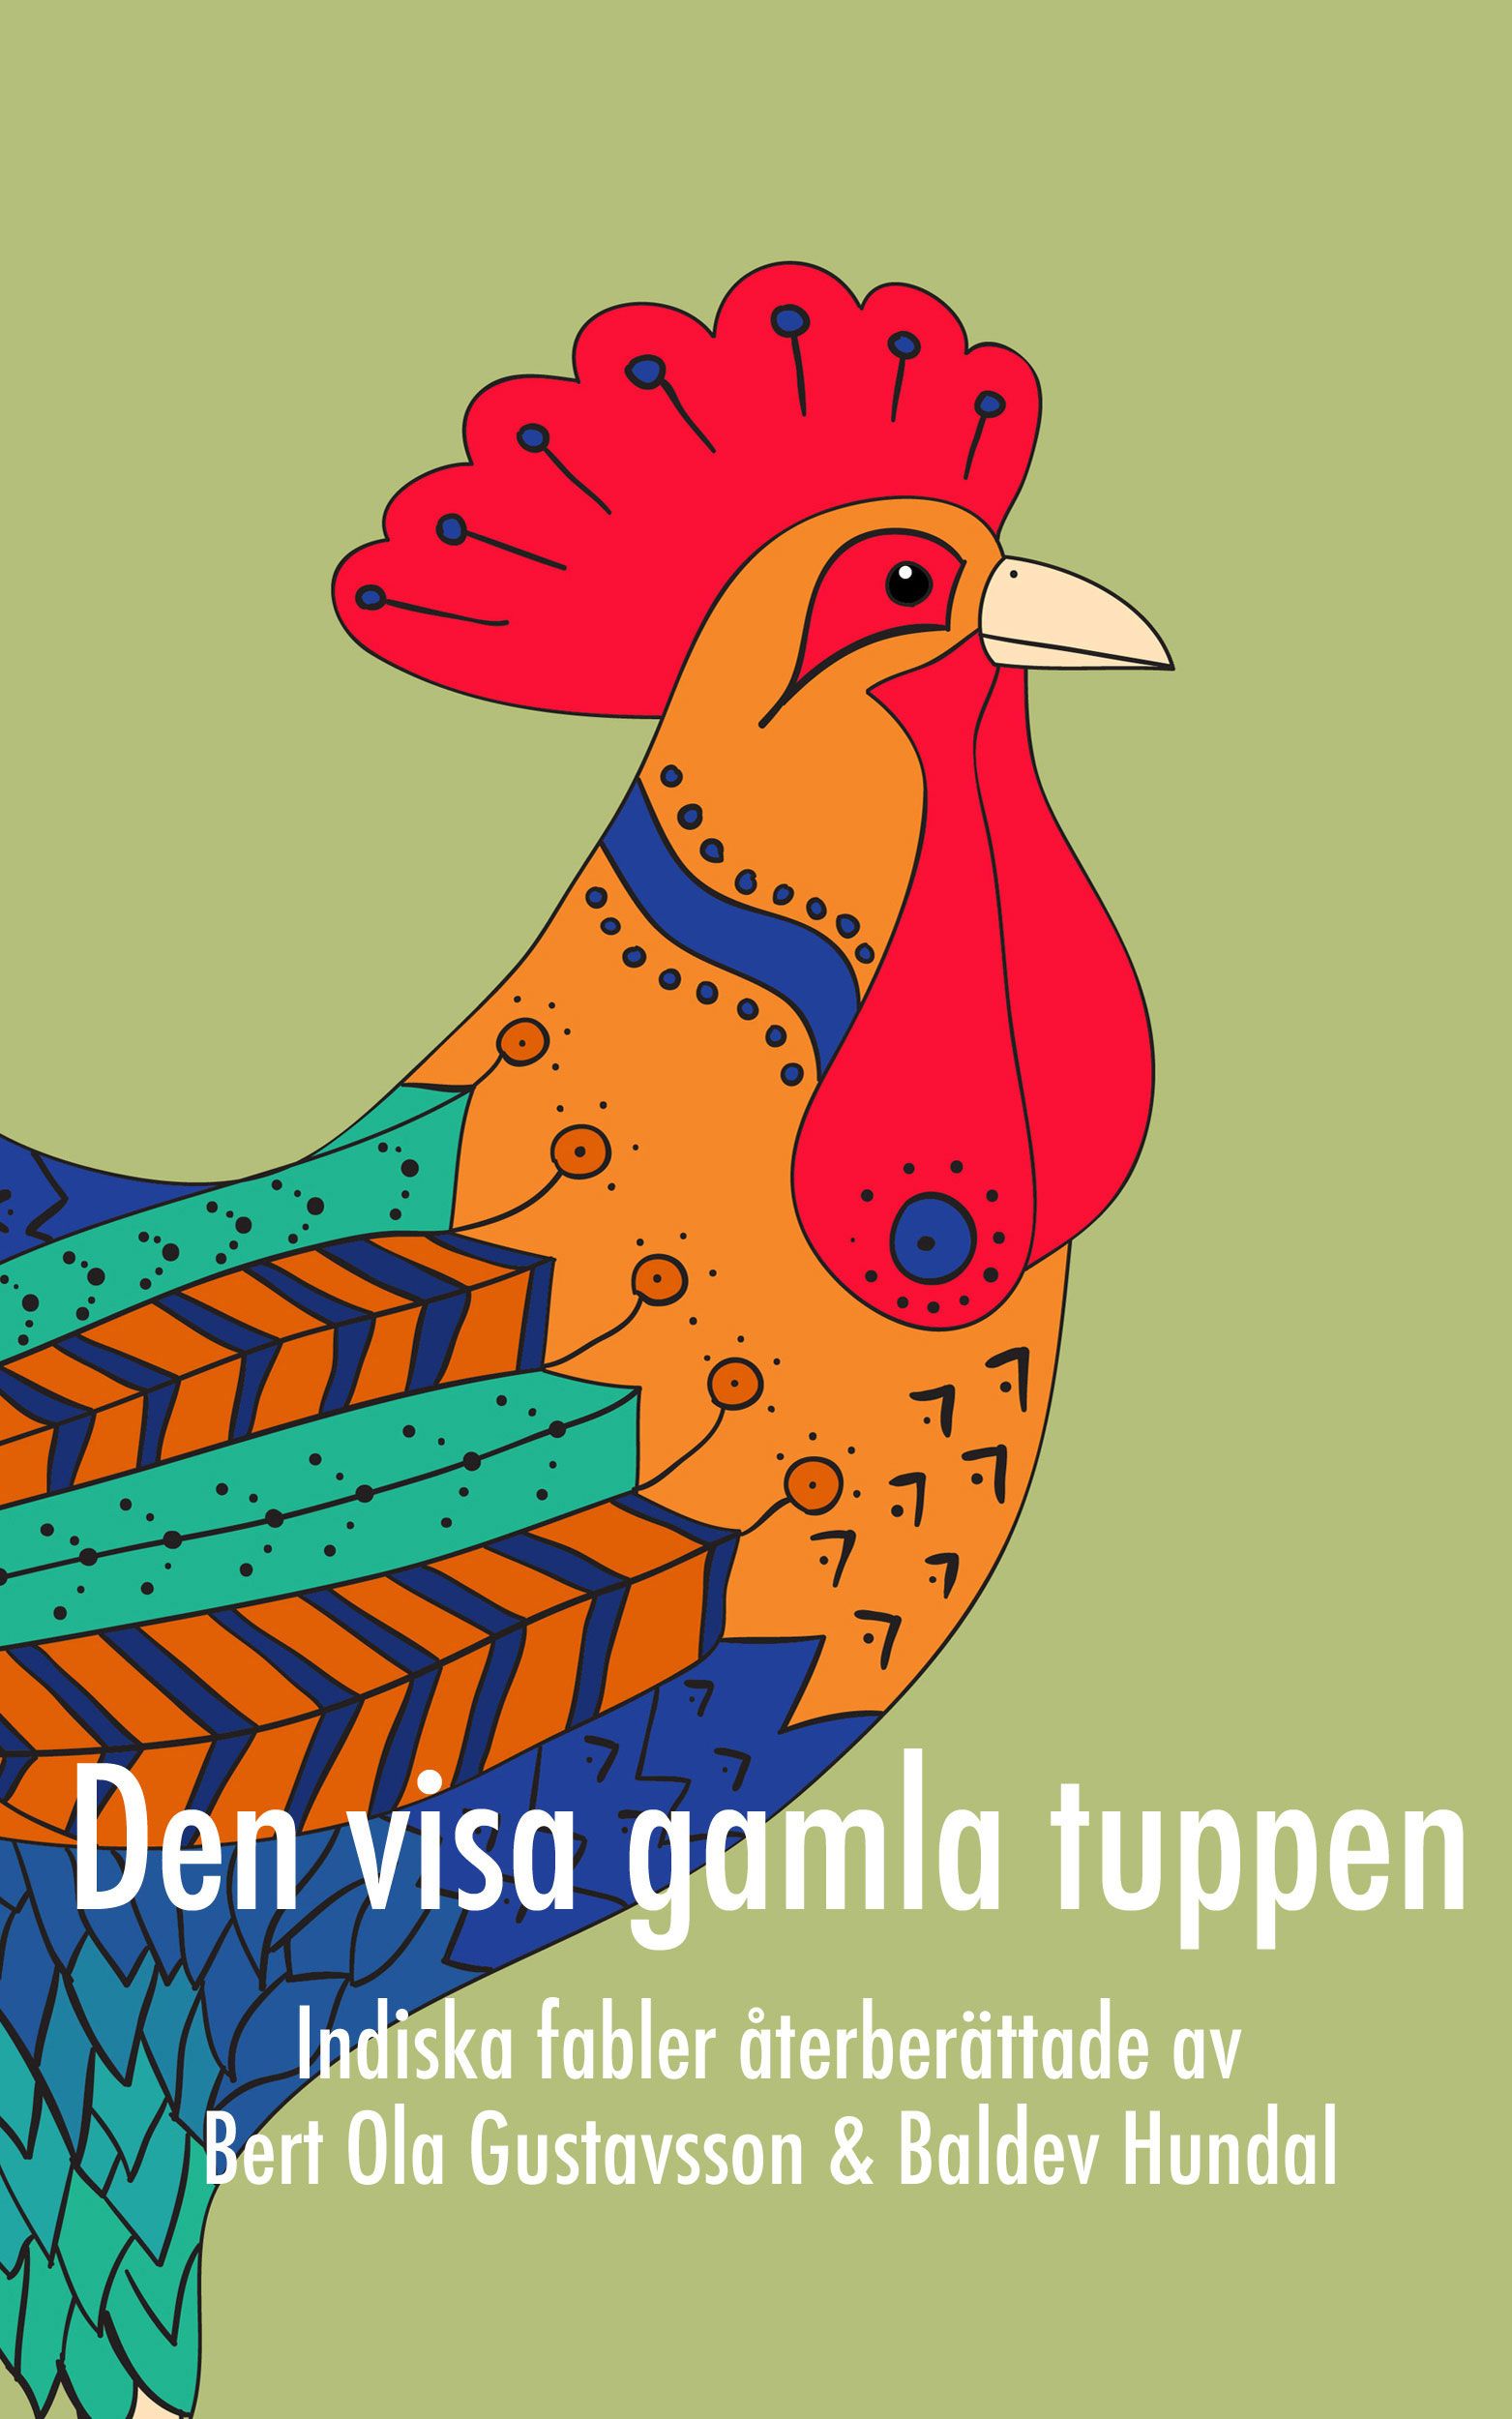 Den visa gamla tuppen, e-bok av Bert Ola Gustavsson, Baldev Hundal